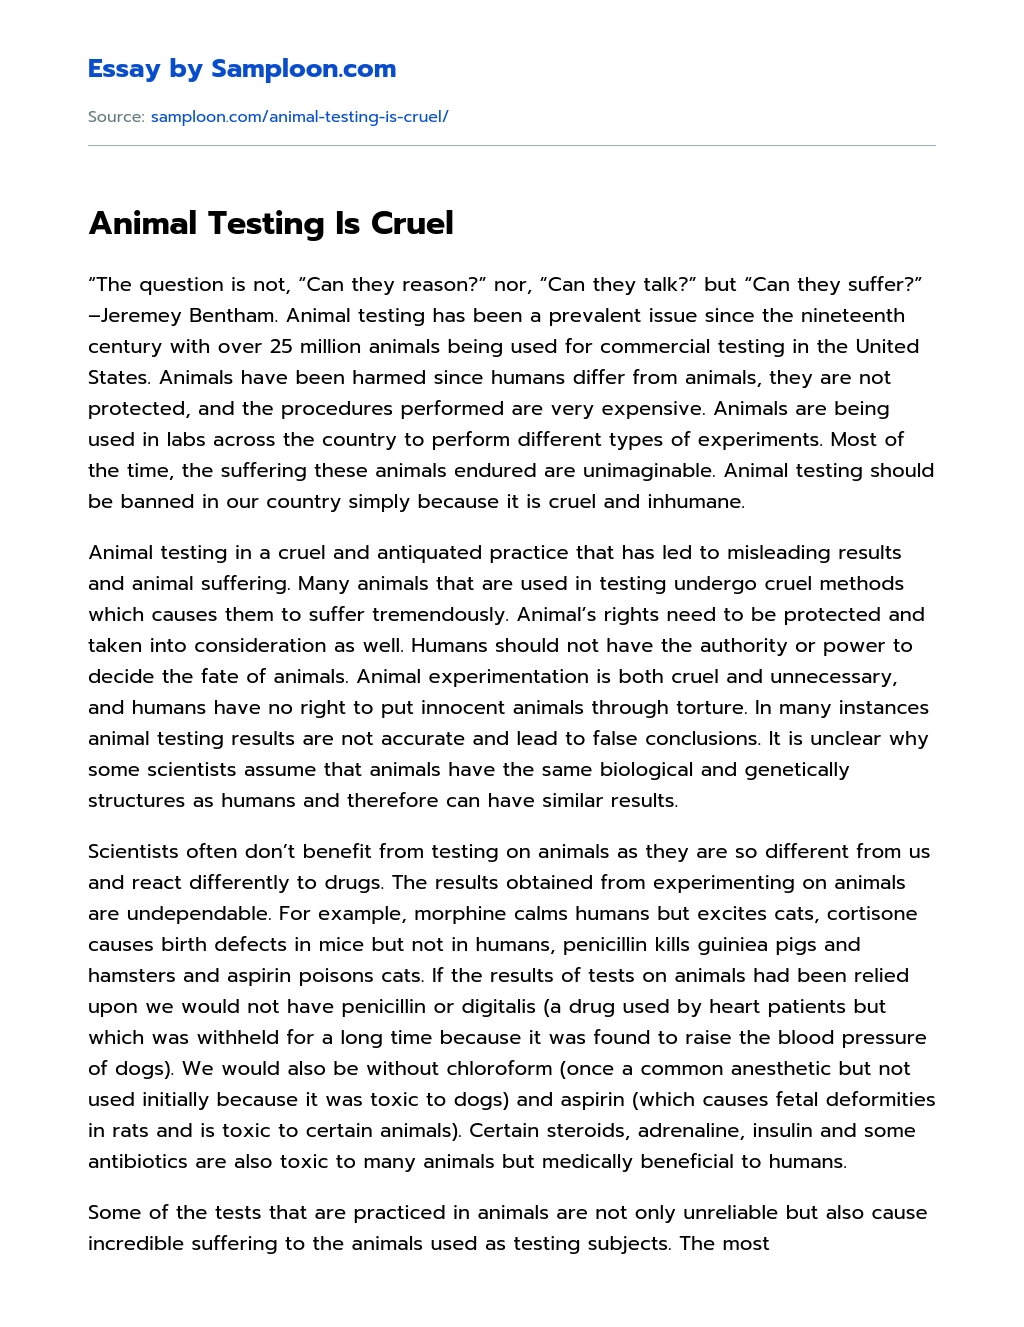 Animal Testing Is Cruel Free Essay Sample on 